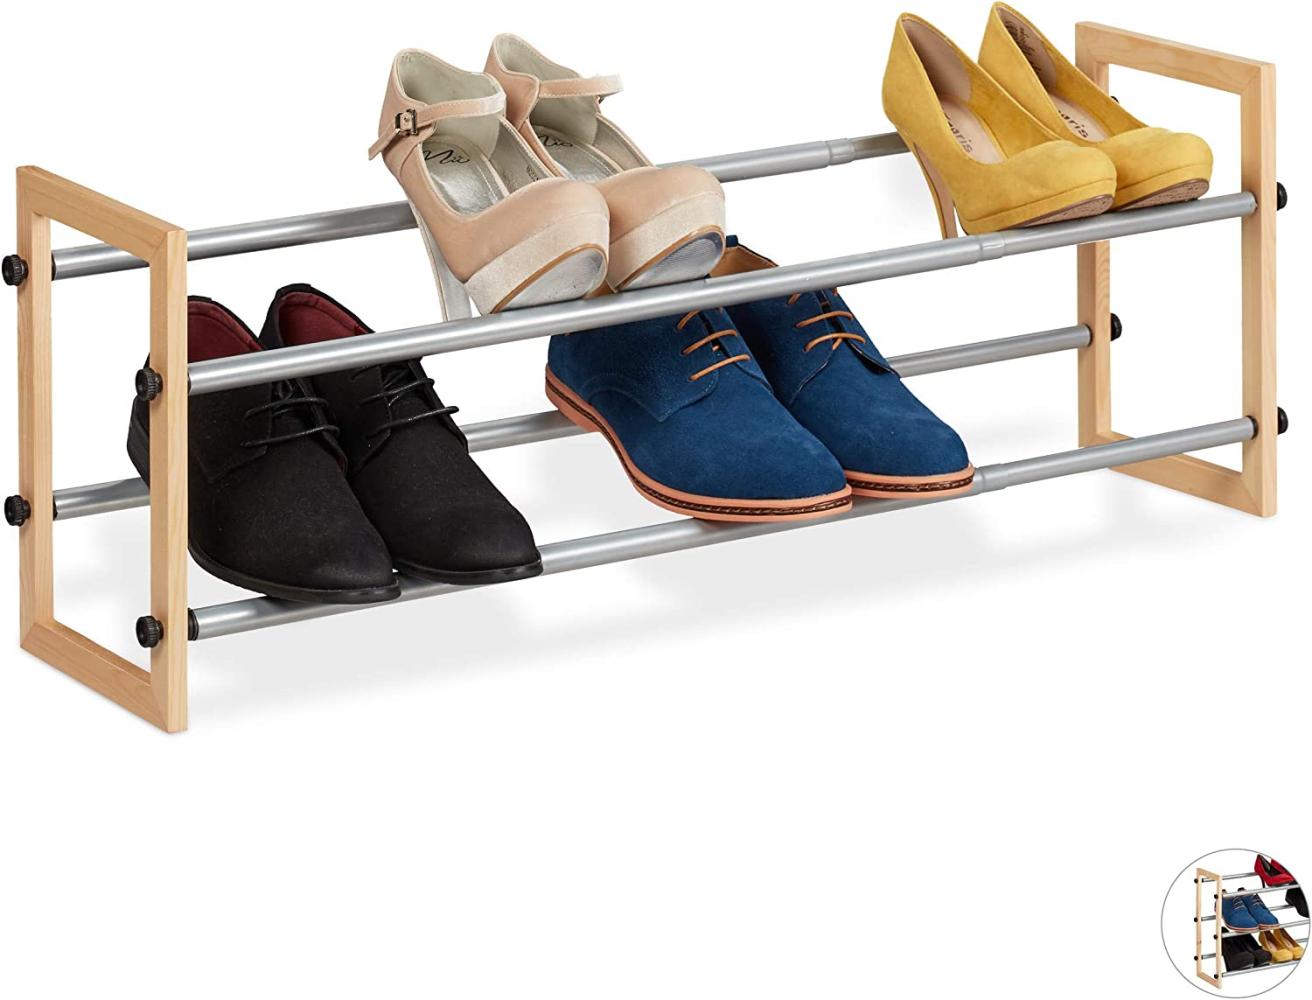 Relaxdays Schuhregal ausziehbar, offener Schuhständer mit 2 Ebenen, Holz & Eisen, erweiterbar bis 118 cm Breite, Natur Bild 1